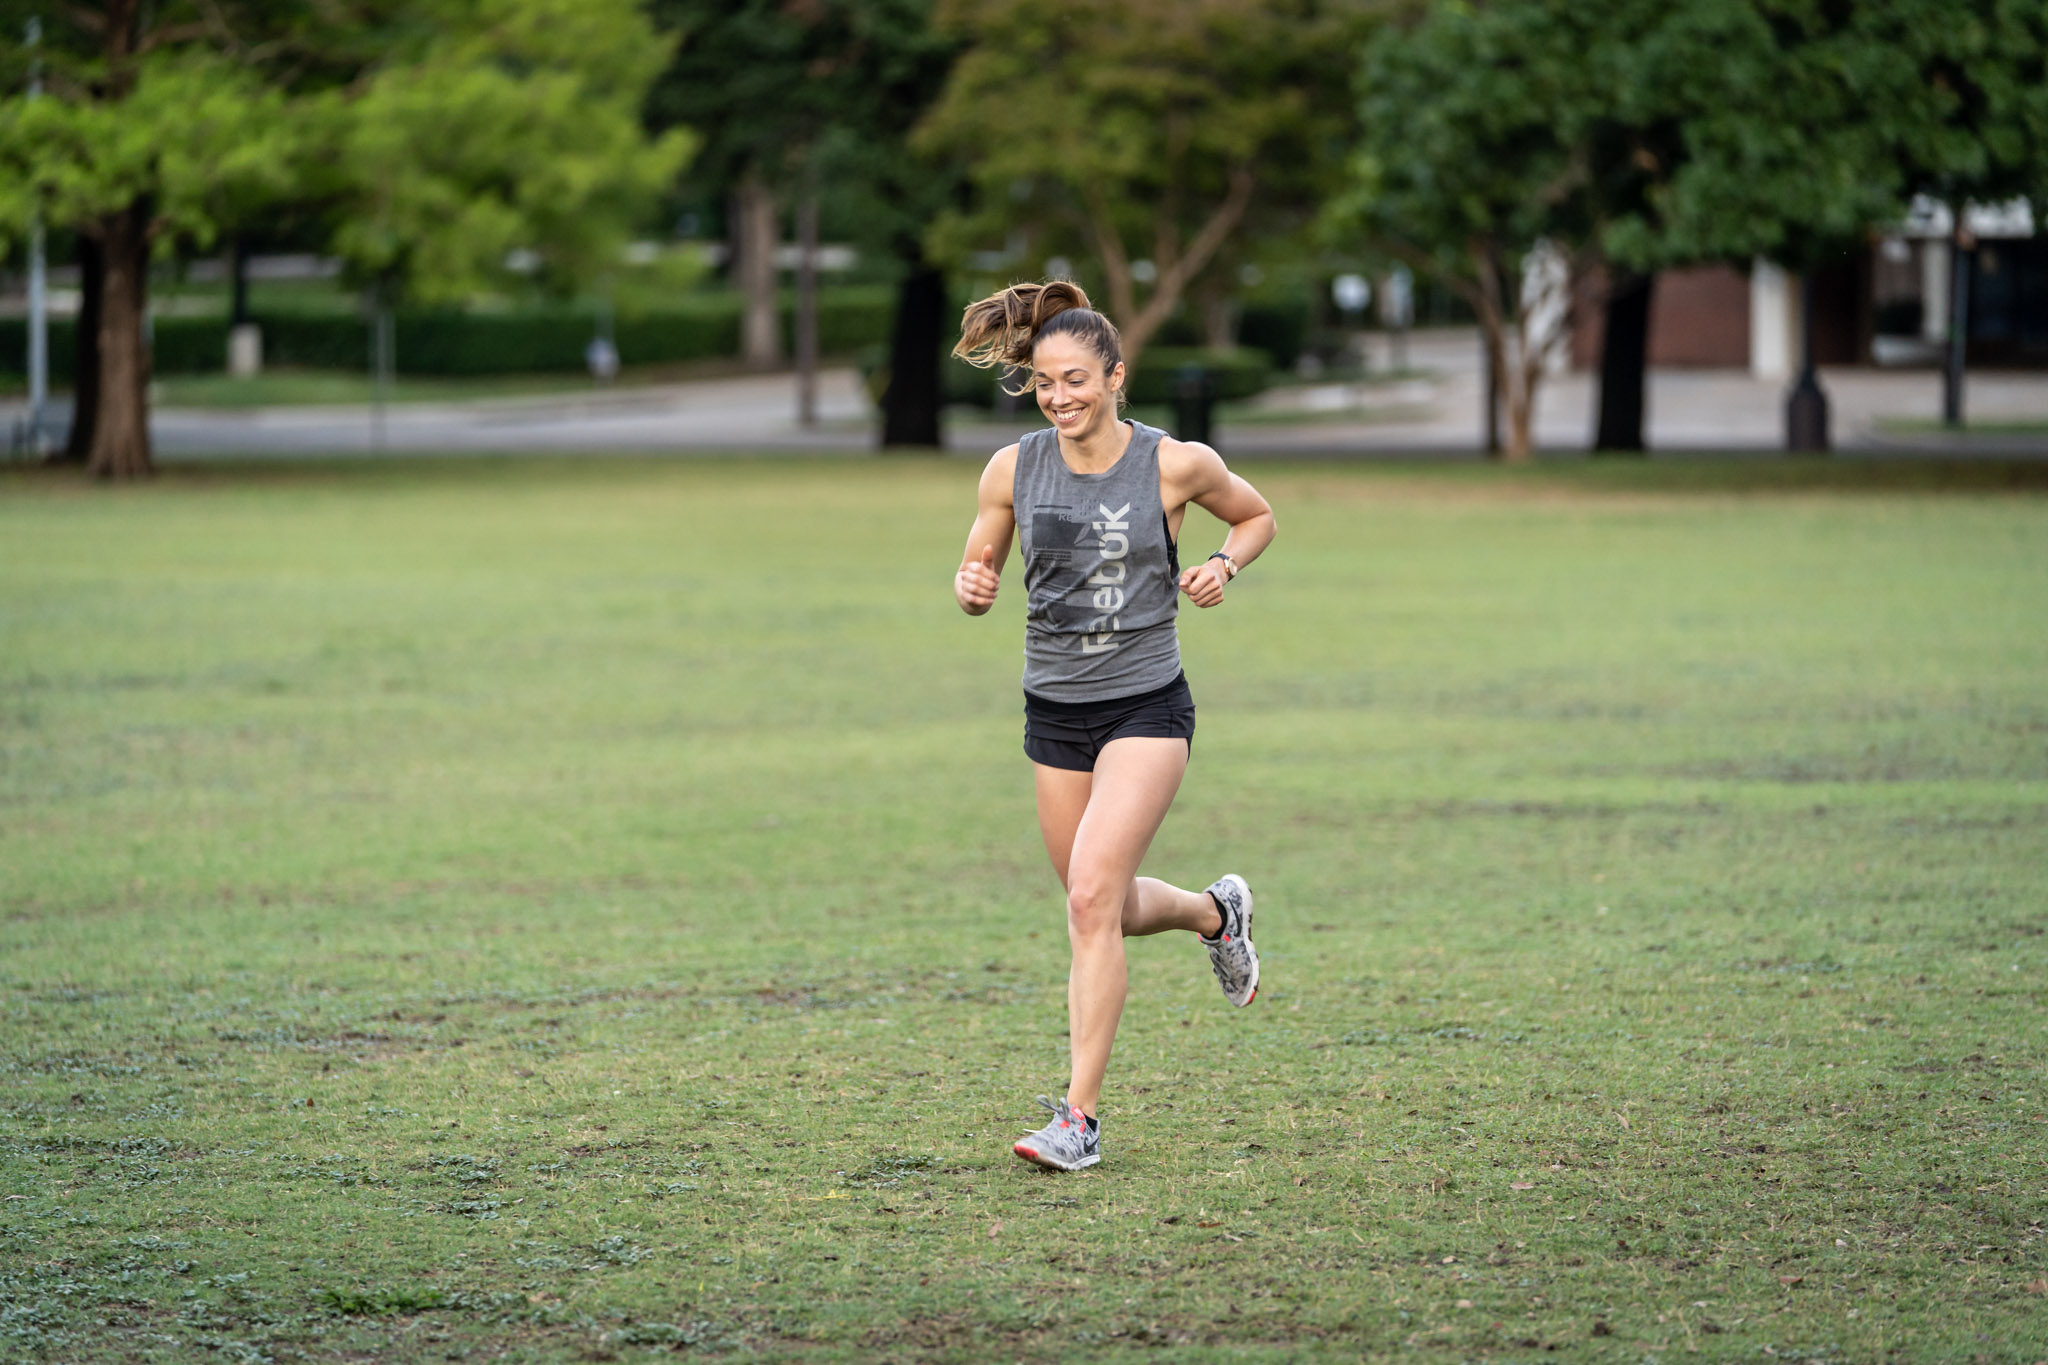 a woman running on a grass field